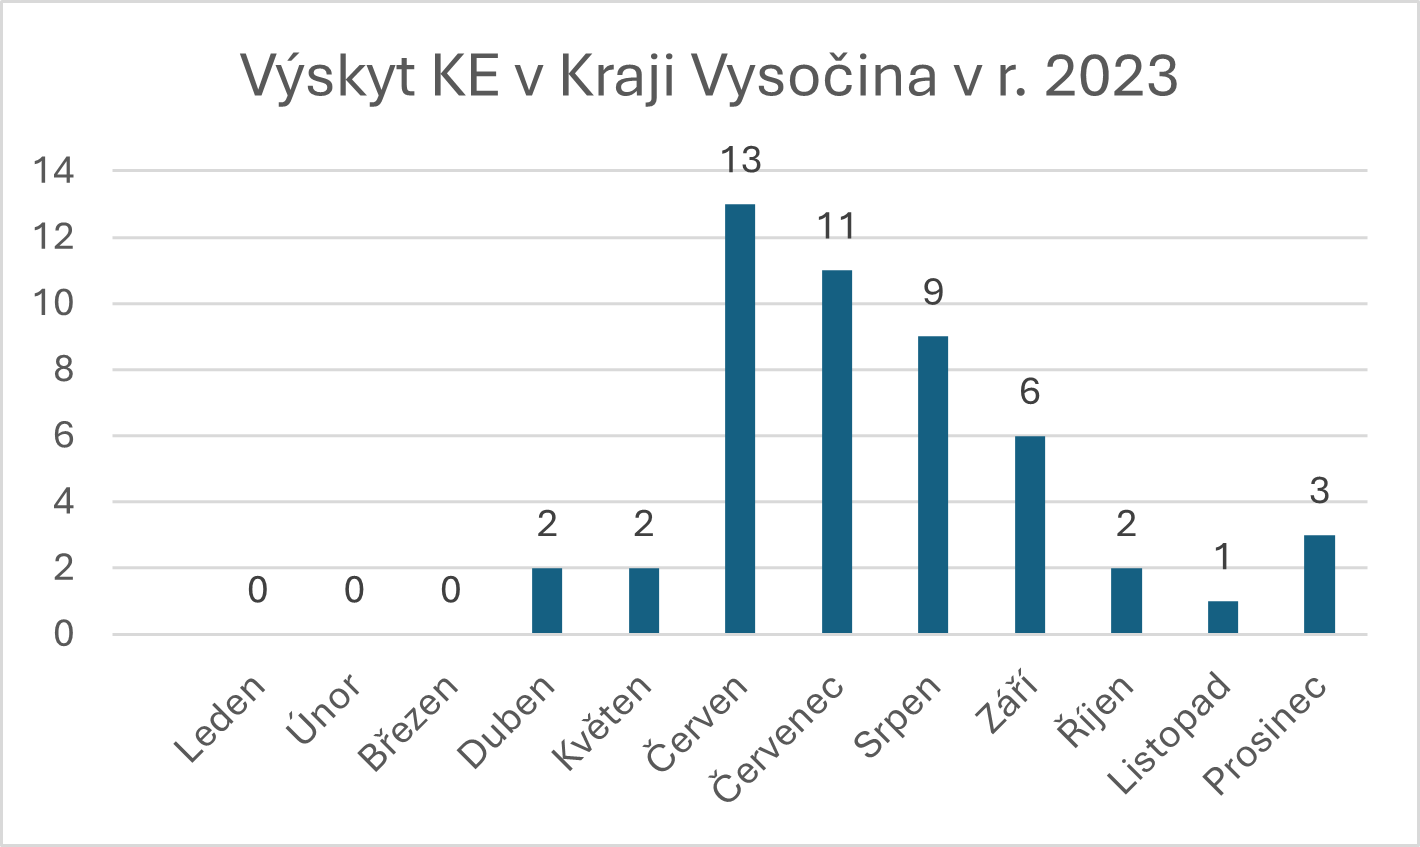 Graf počty případů klíšťové encefalitidy v Kraji Vysočina za rok 2023